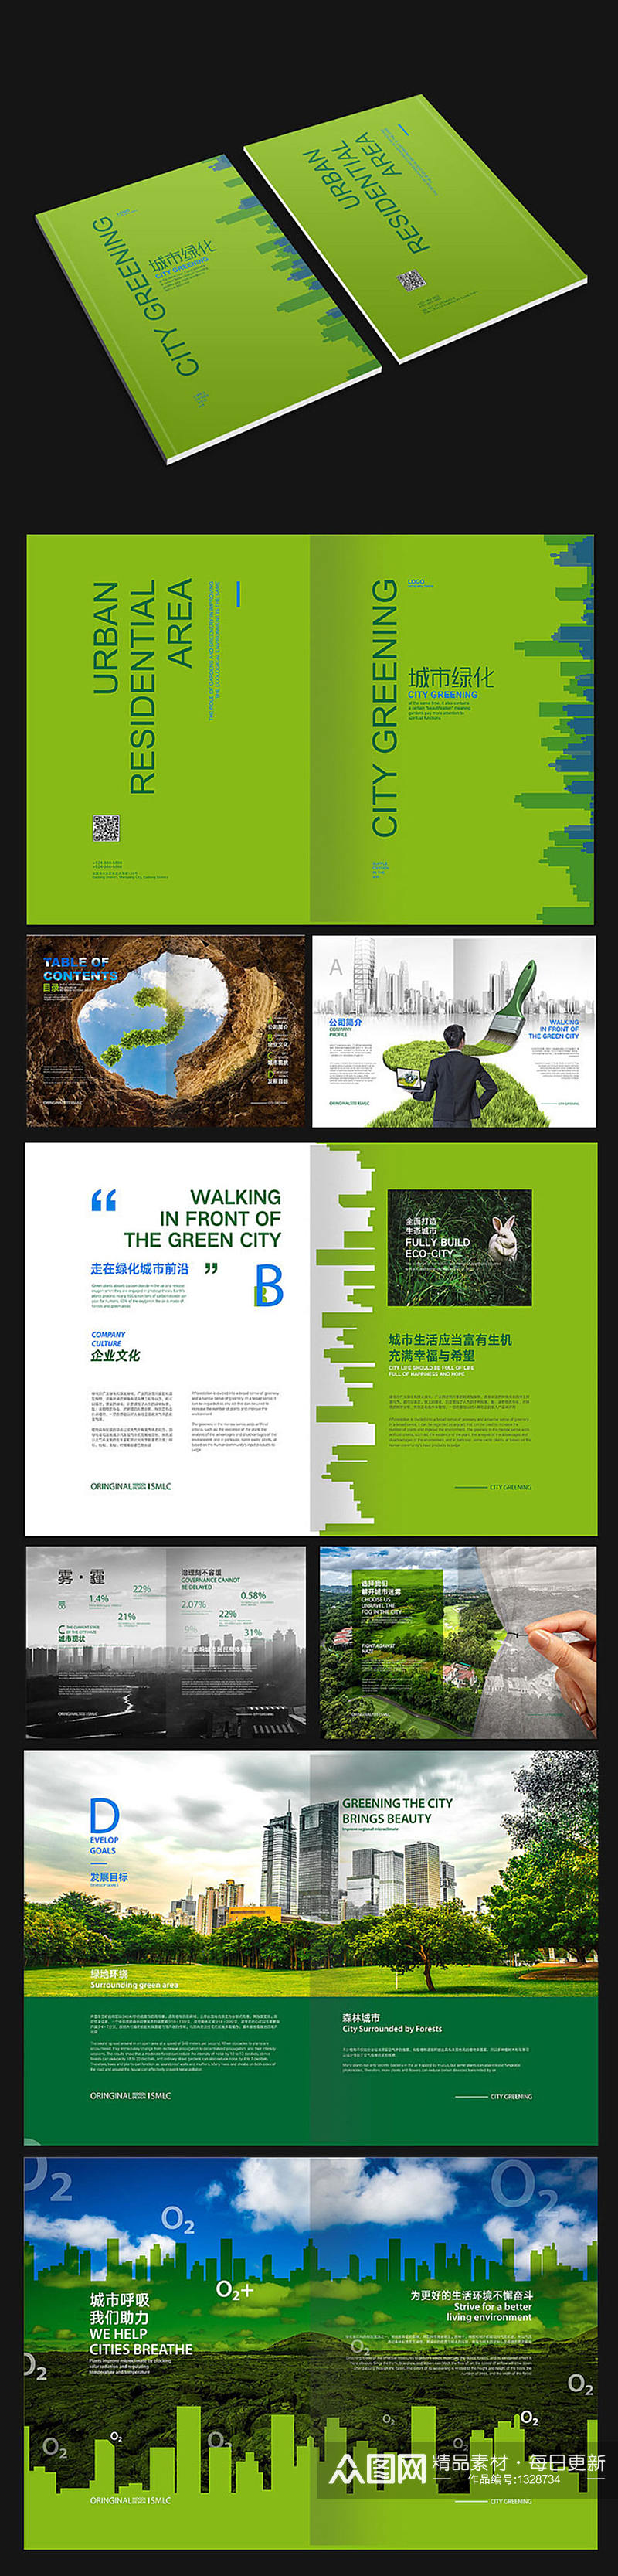 城市绿化宣传画册素材